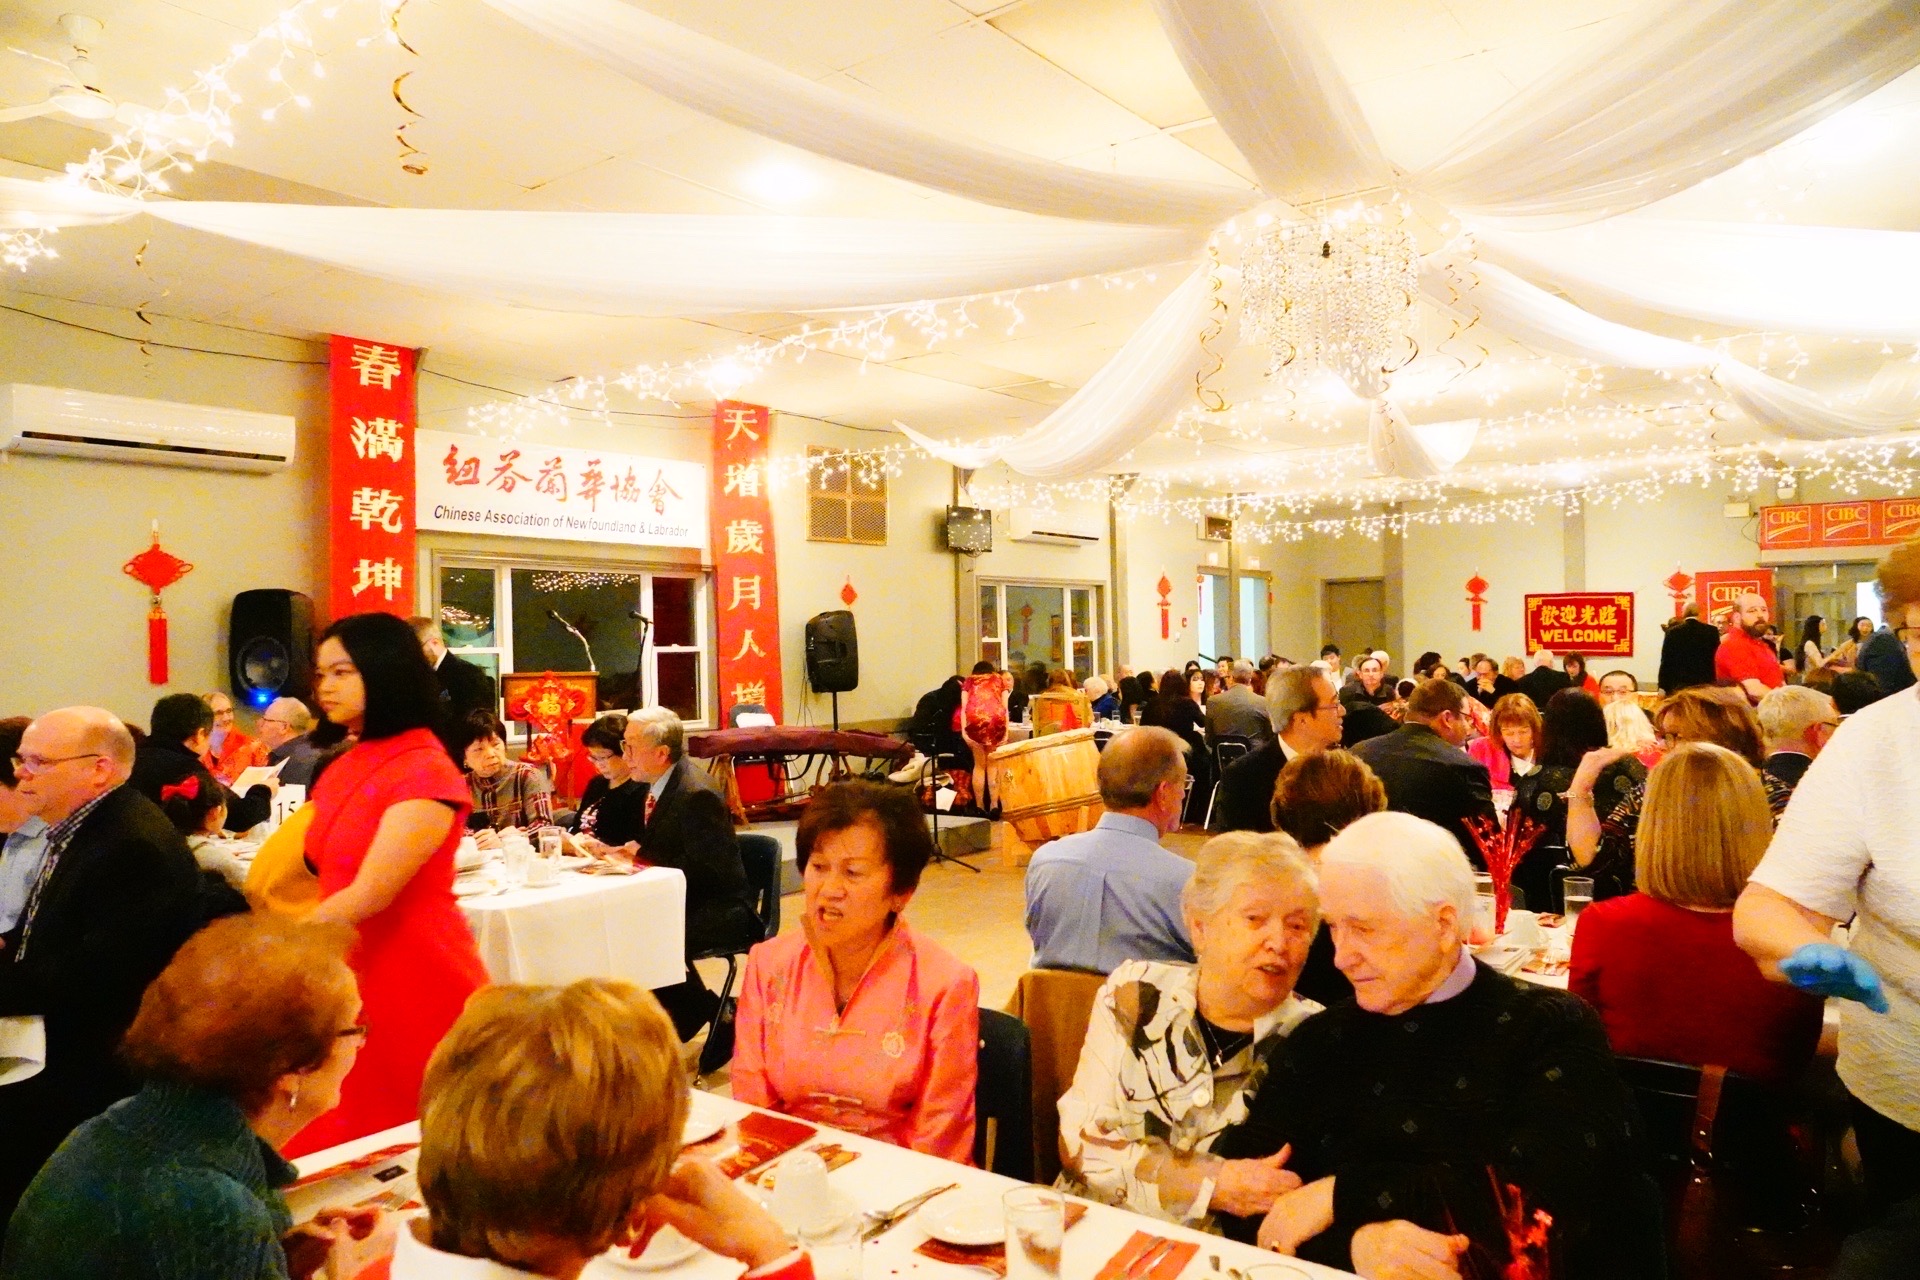 #加拿大的春节# 中国文化在加拿大很受欢迎哦！大年初二纽芬兰华人协会主办的春节联欢晚会参加的人一多半